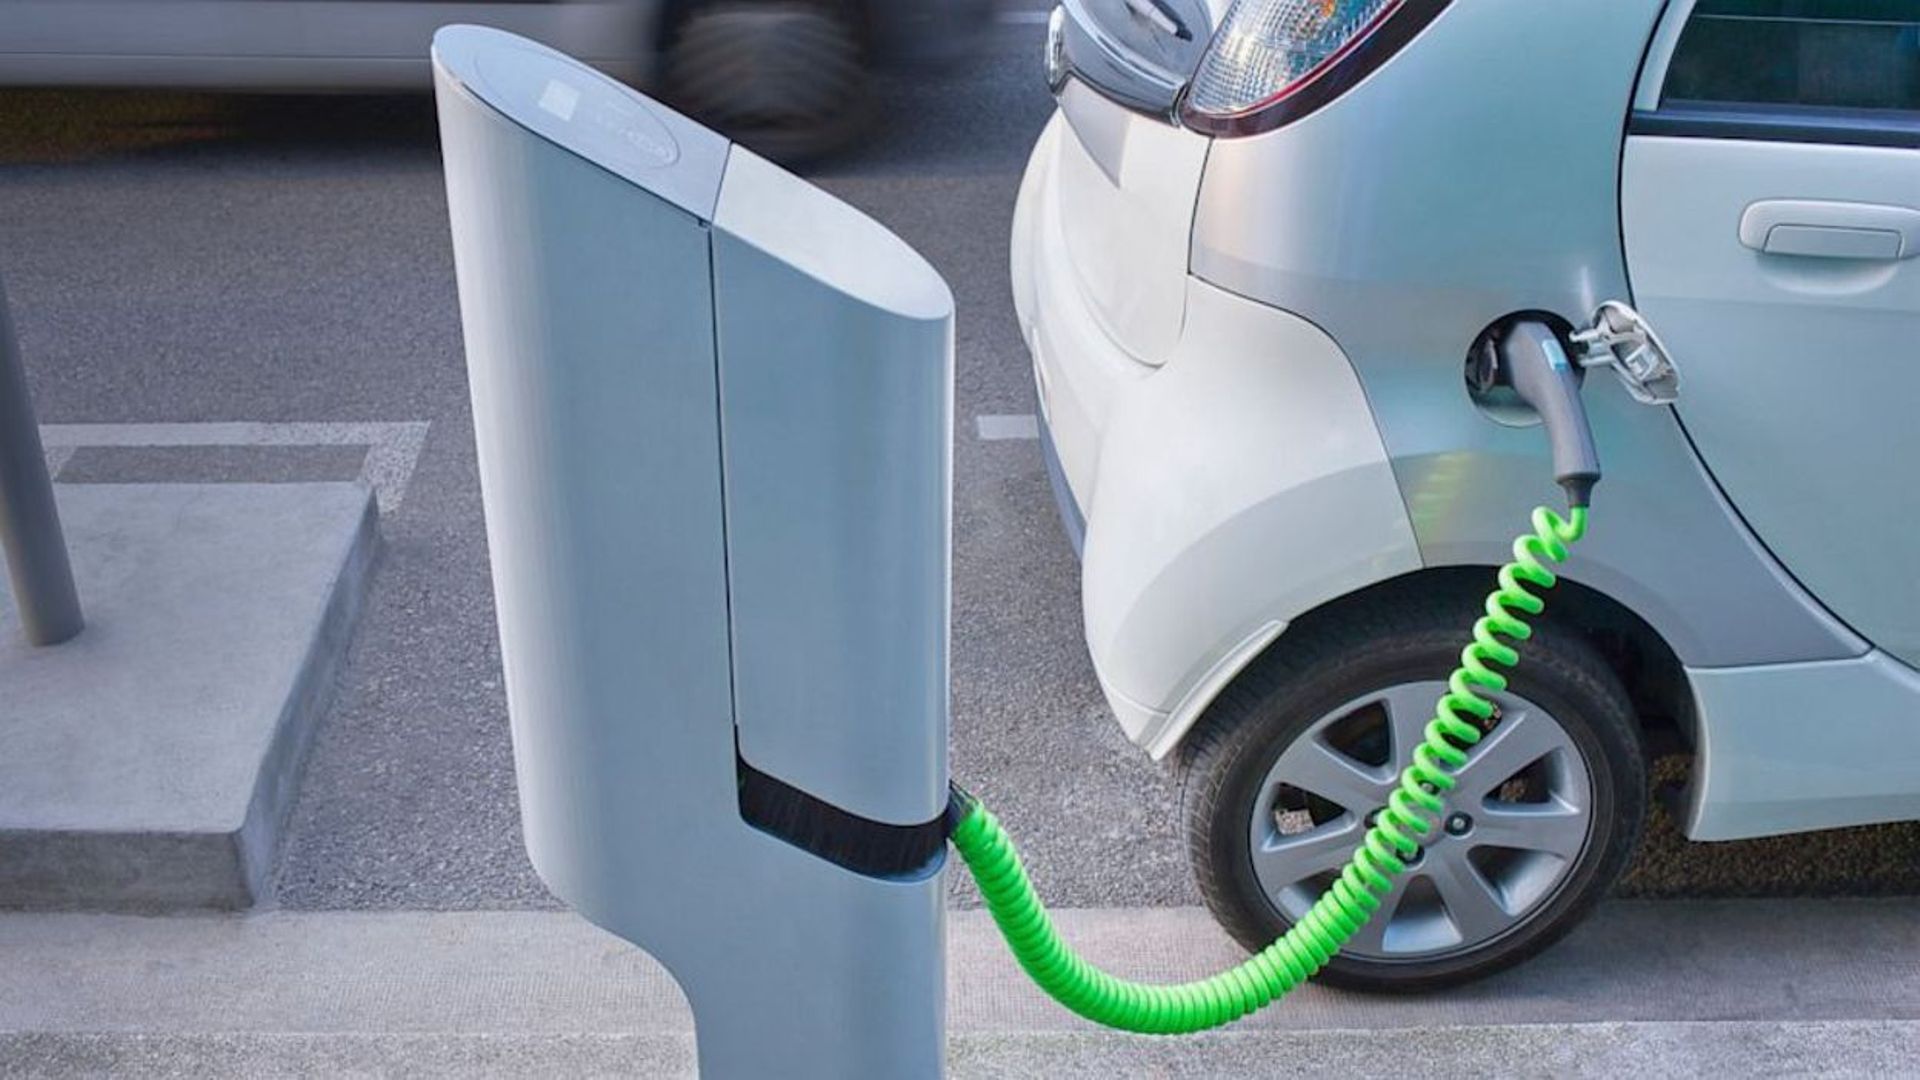 Comme beaucoup de grandes villes, Bruxelles a commencé sa transition vers de nouveaux modèles, d'ici à 2020, les autorités prévoient d'installer 200 bornes de recharge pour voitures électriques.